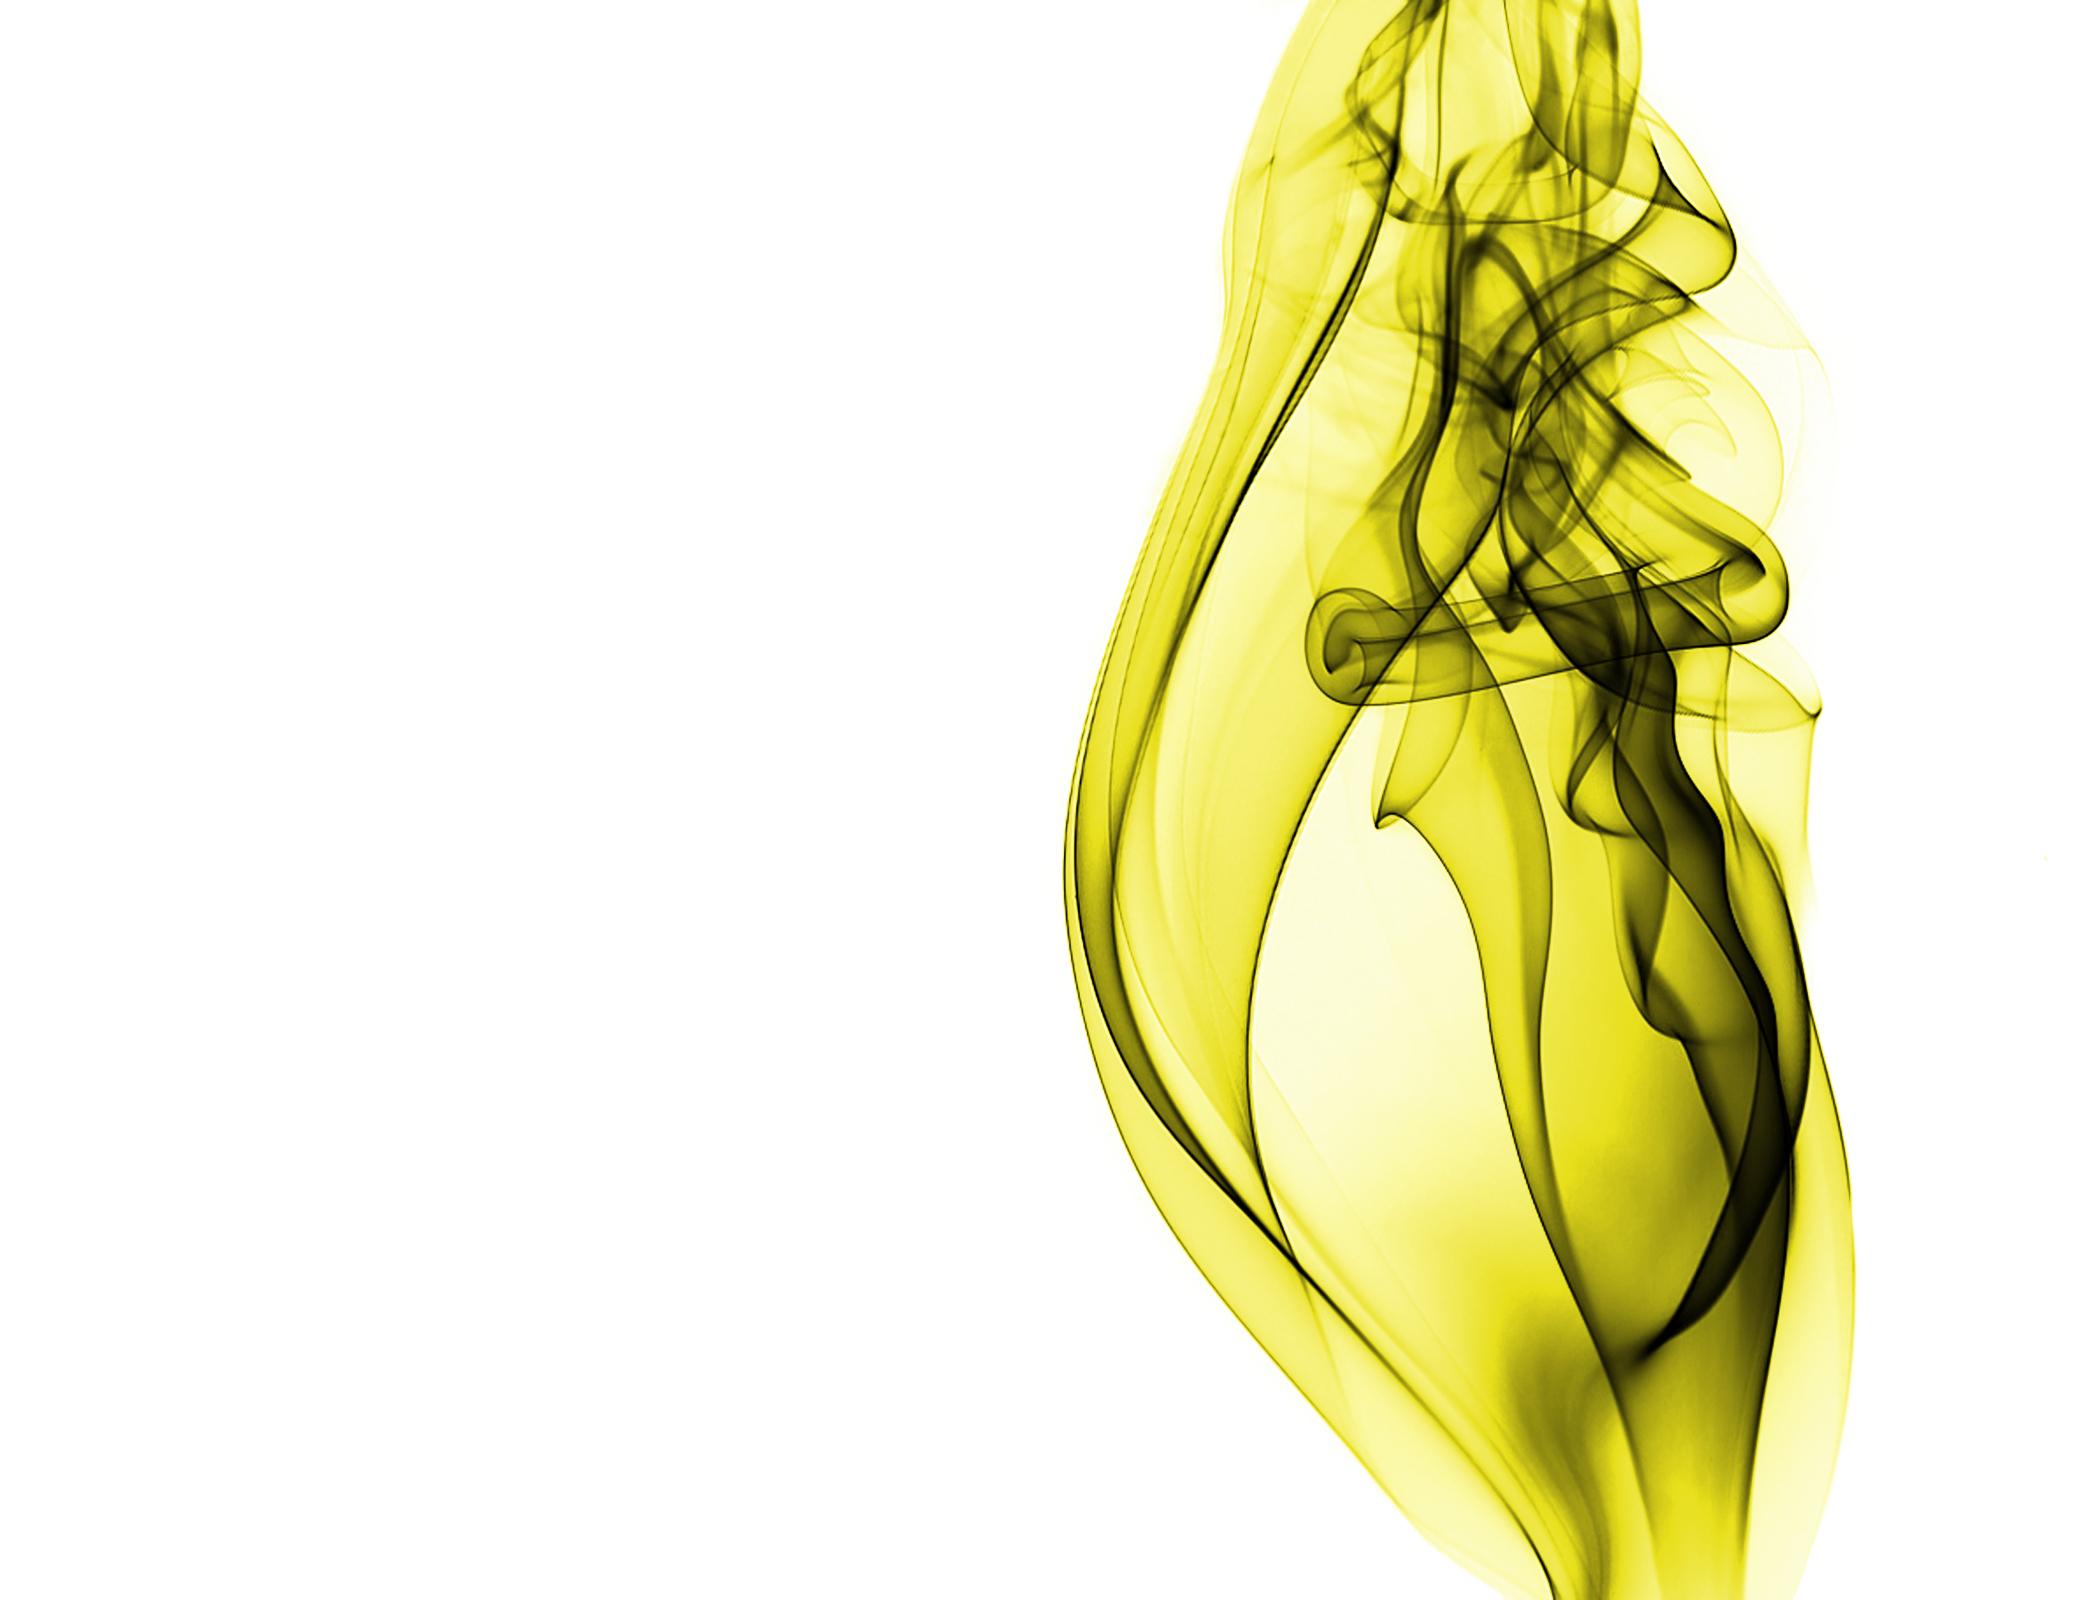 Artistic Cgi Pattern Smoke Yellow 2100x1600